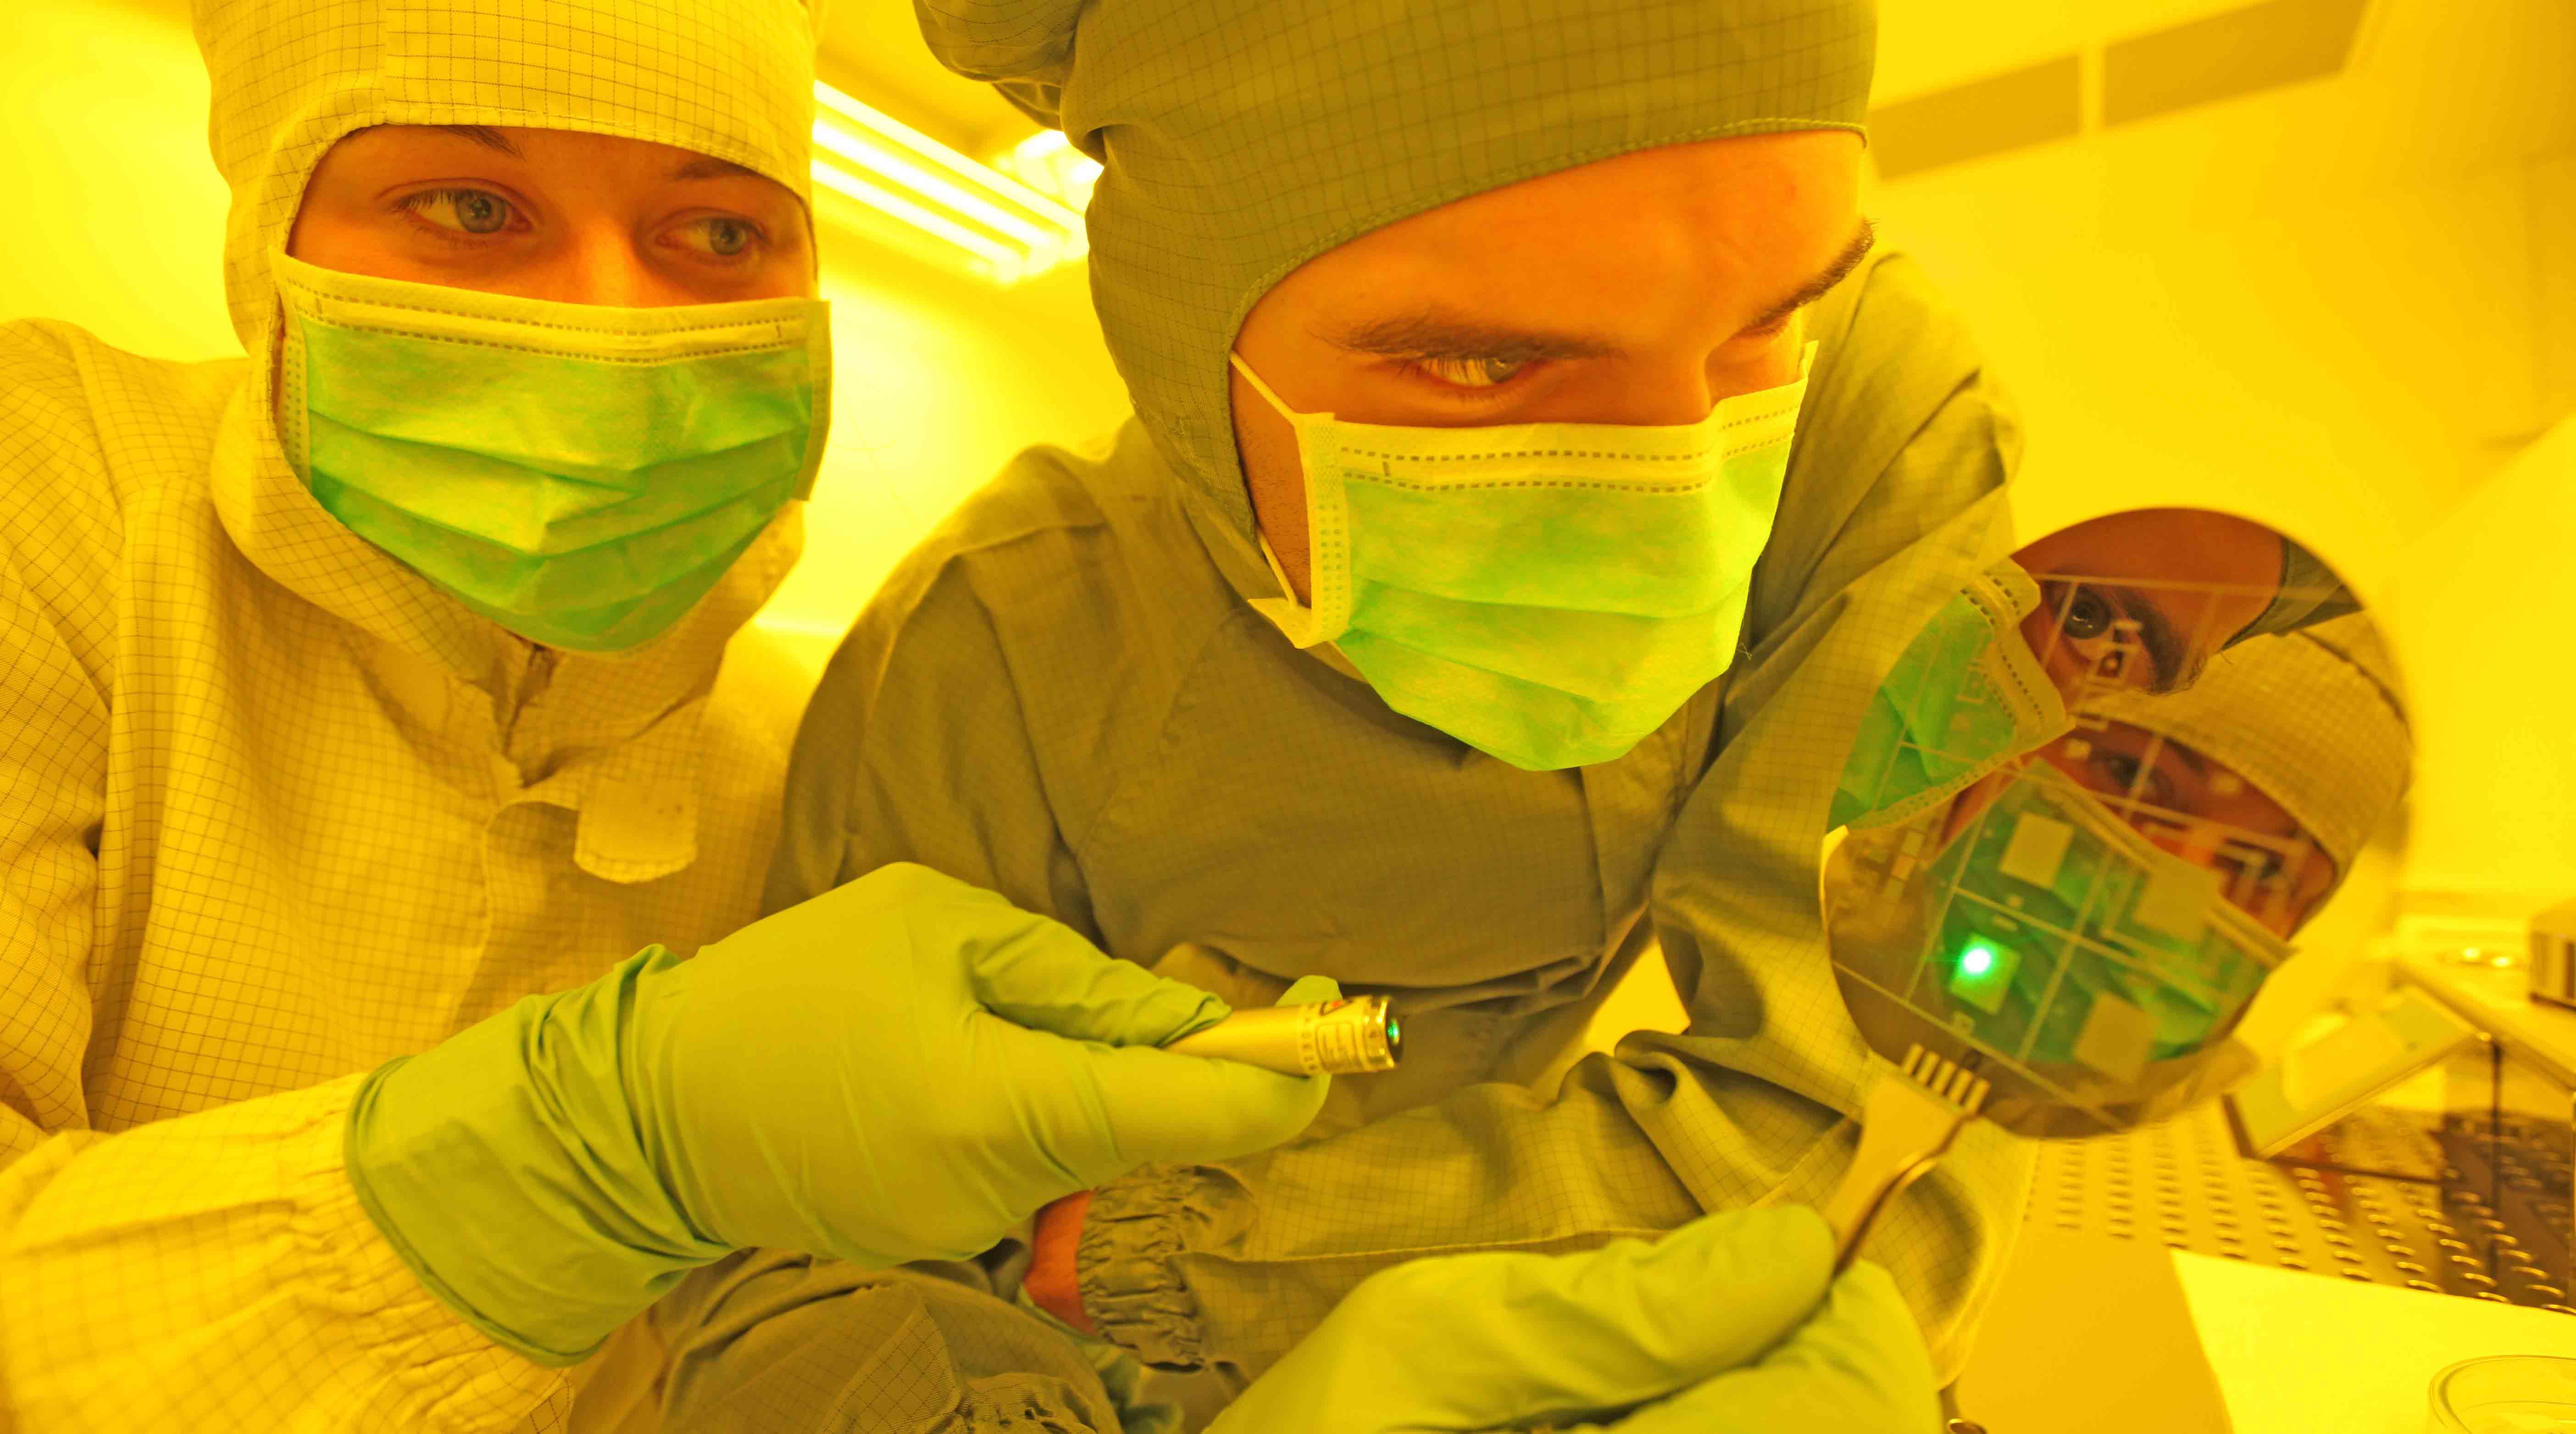 Foto: Zwei Personen in Schutzkleidung mit Kopfbedeckung und medizinischen Mundschutz in einem Labor. Eine Person hält einen ovalen Gegenstand in der Hand, dessen Oberfläche wie ein Spiegel wirkt und die Gesichter darin zu erkennen sind.